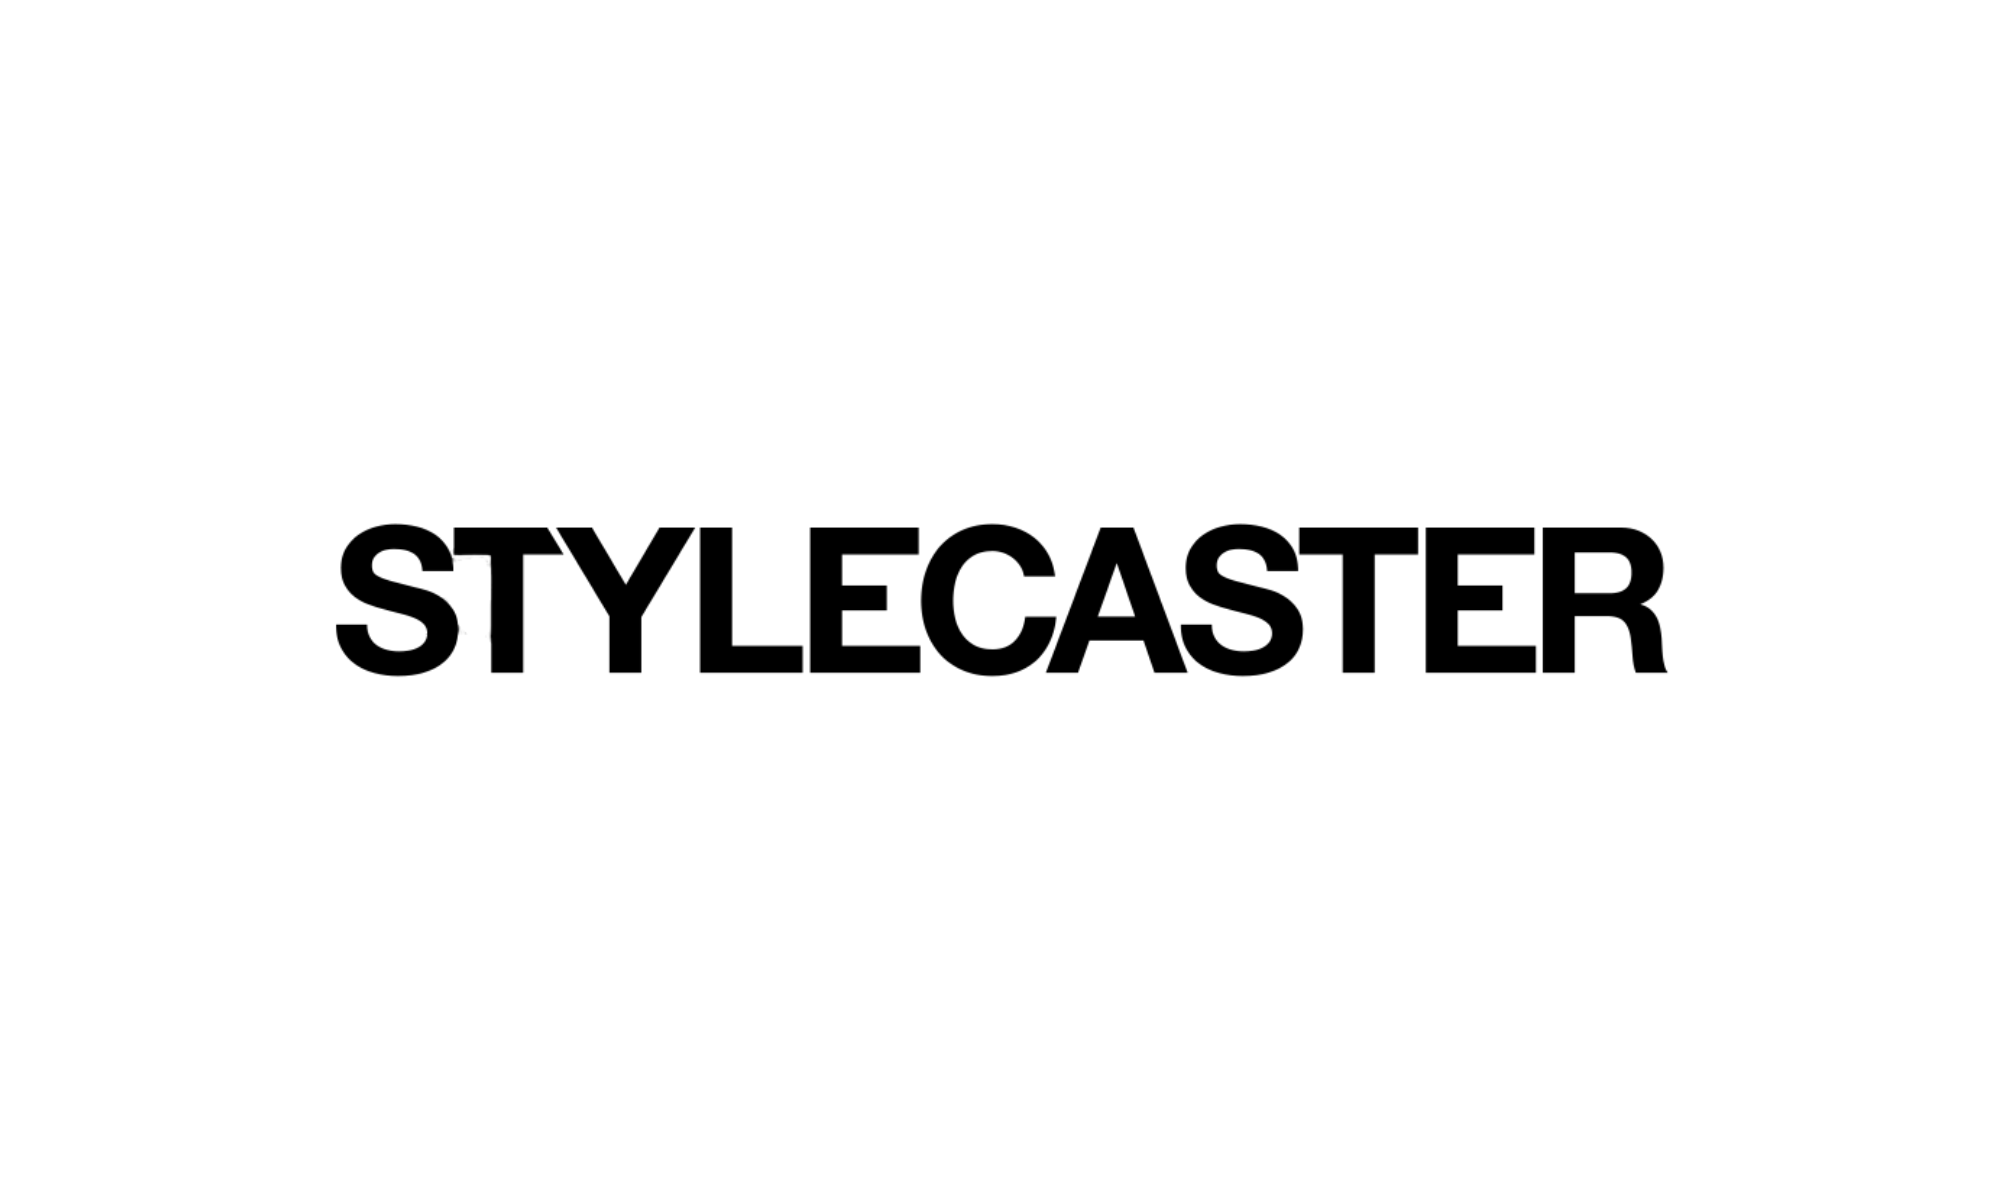 StyleCaster